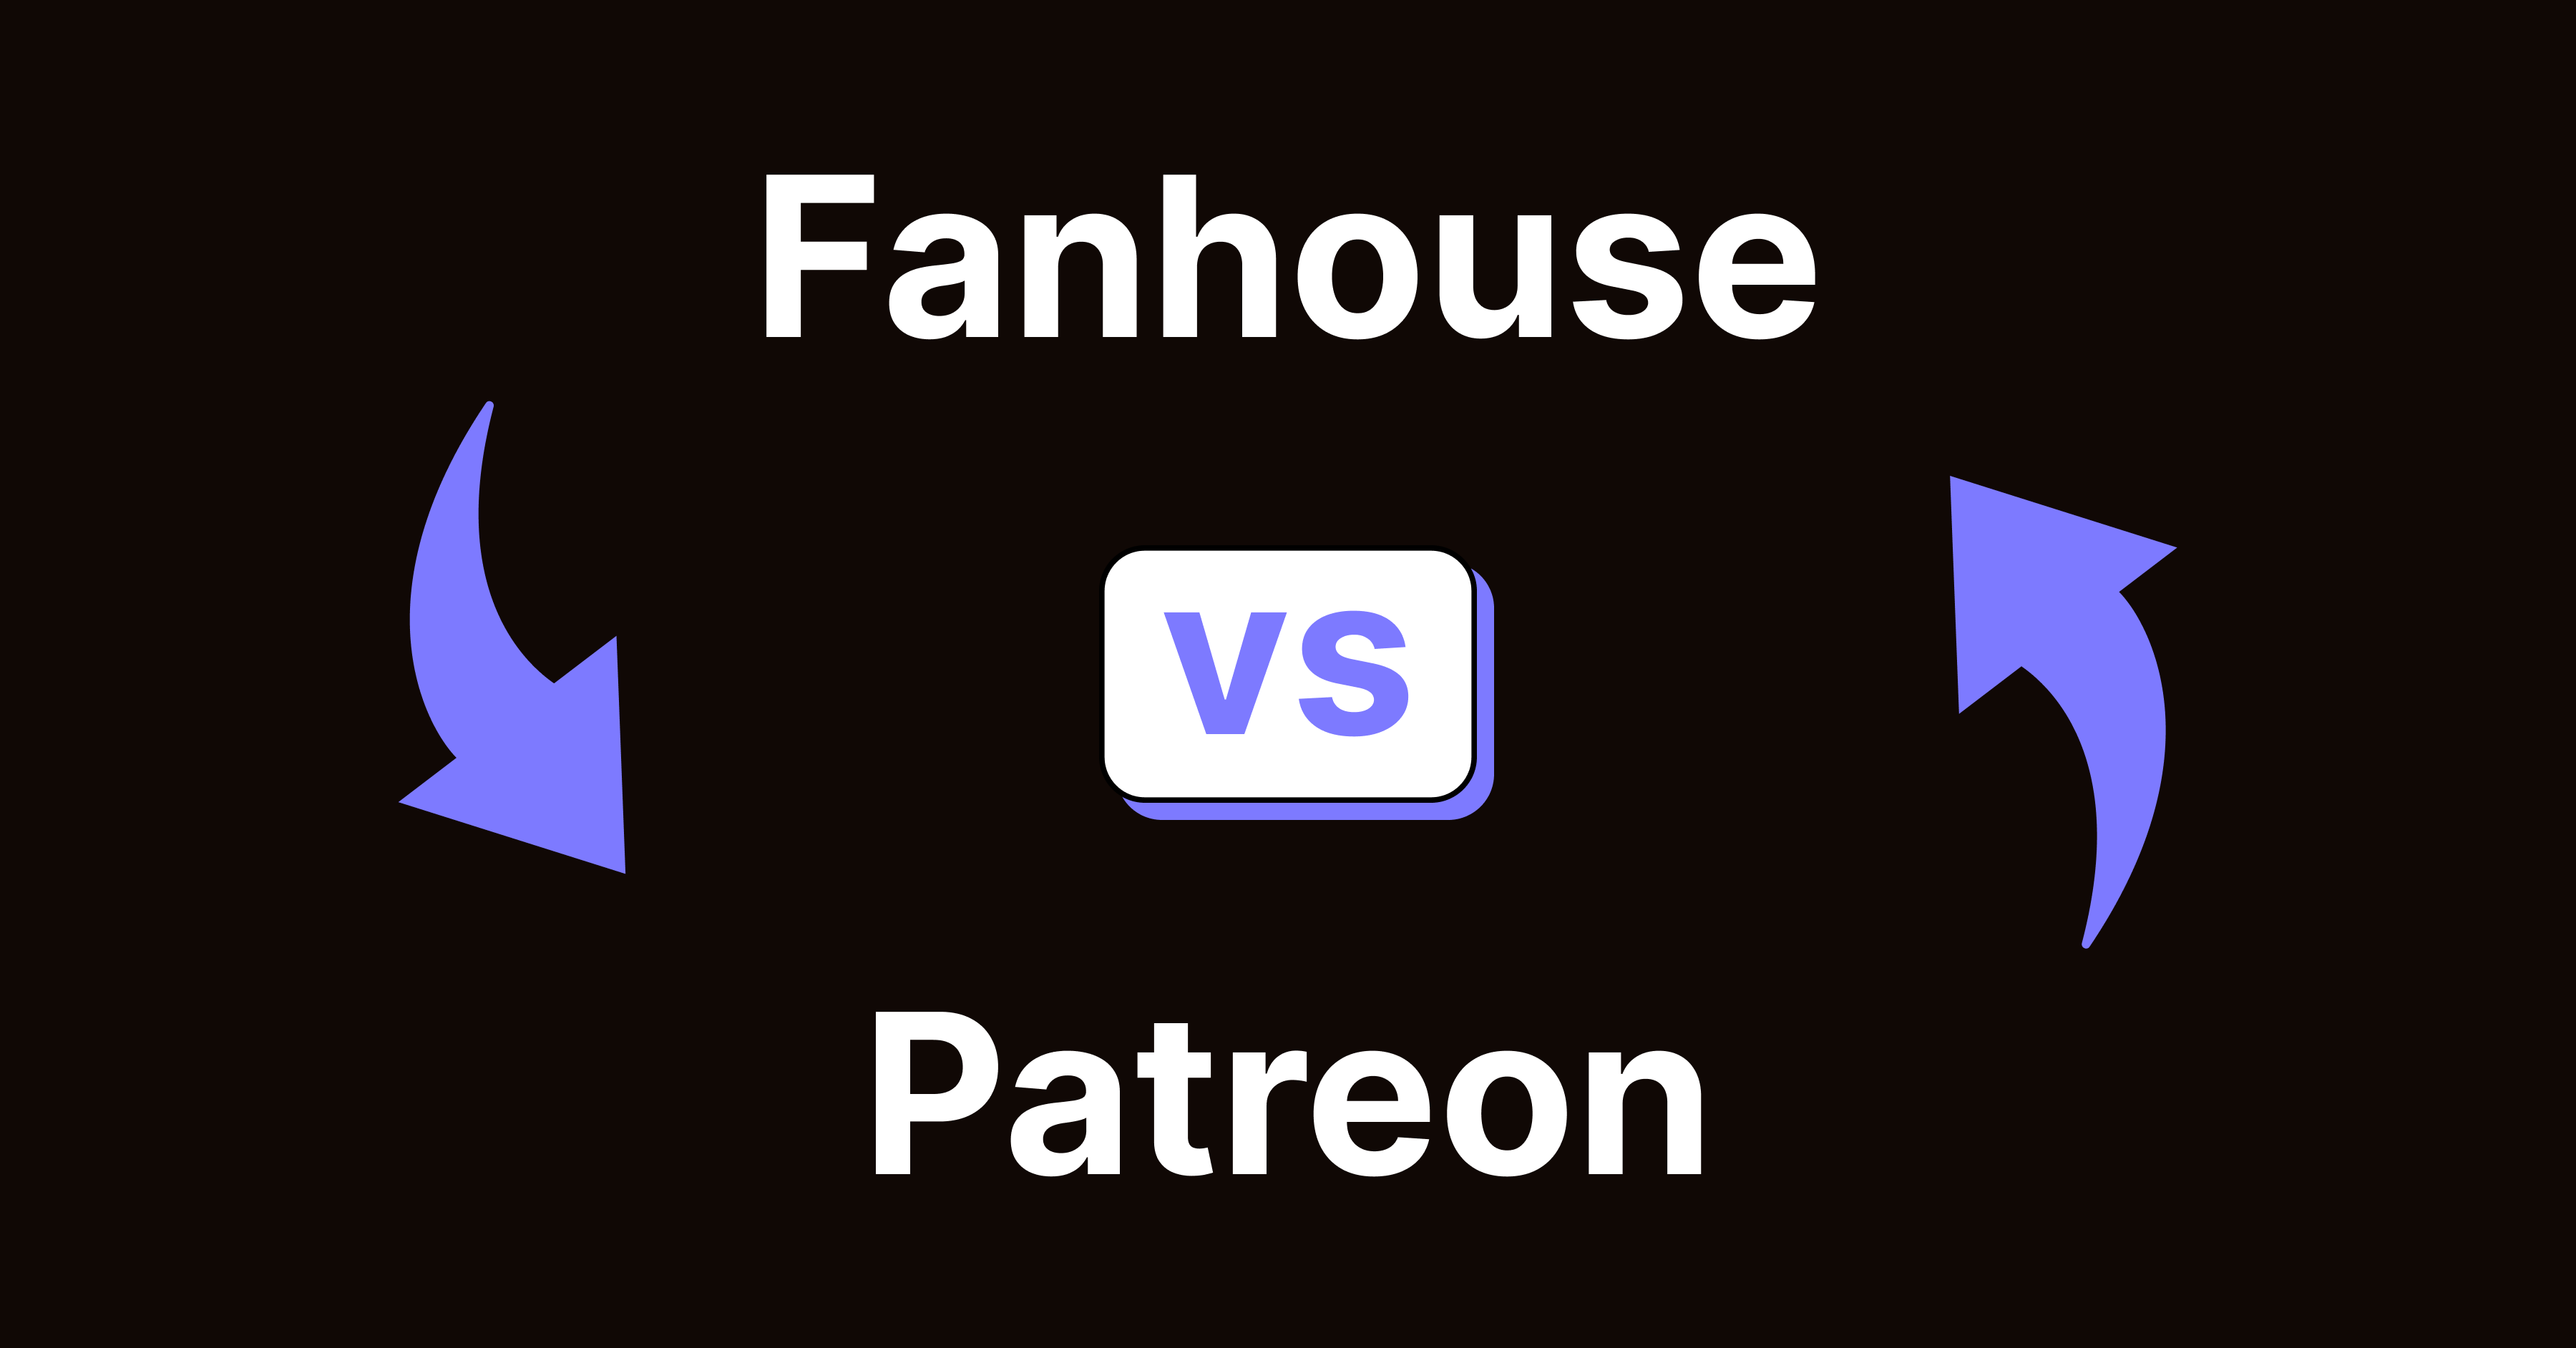 Fanhouse vs. Patreon